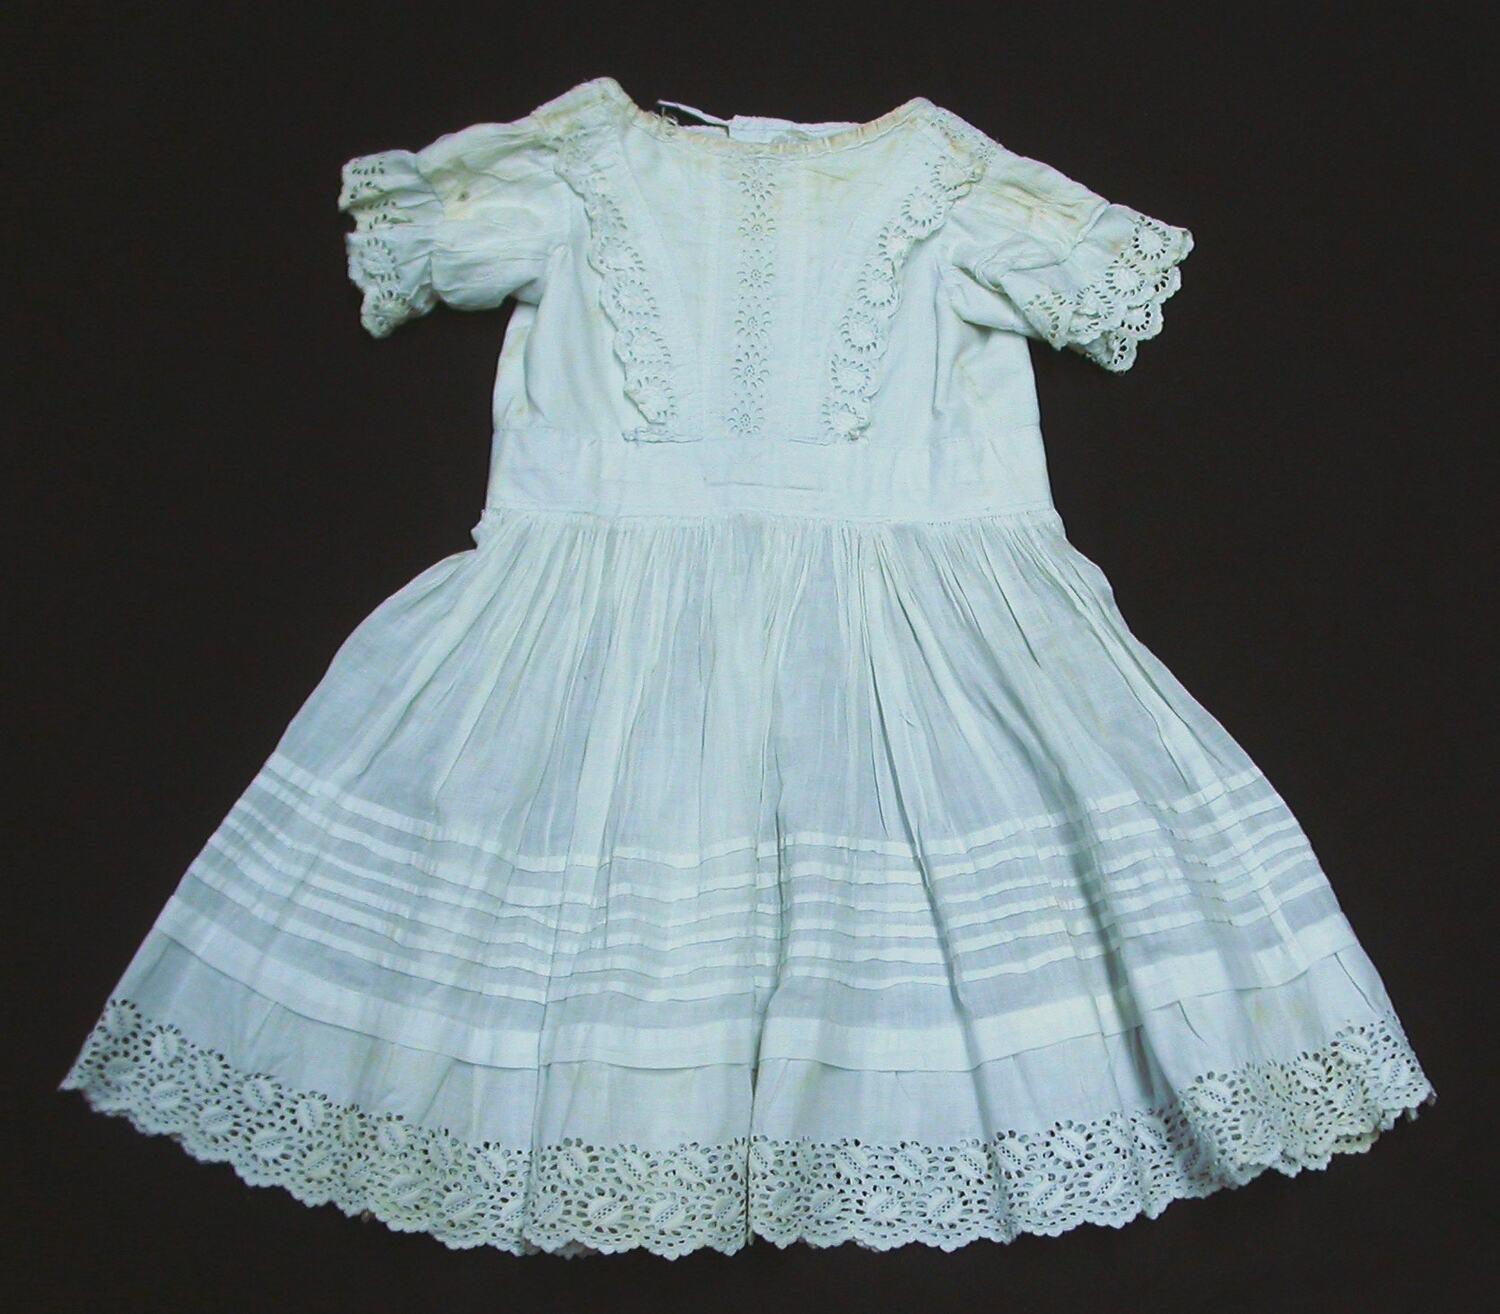 Petticoat - White Cotton, circa 1880-1910